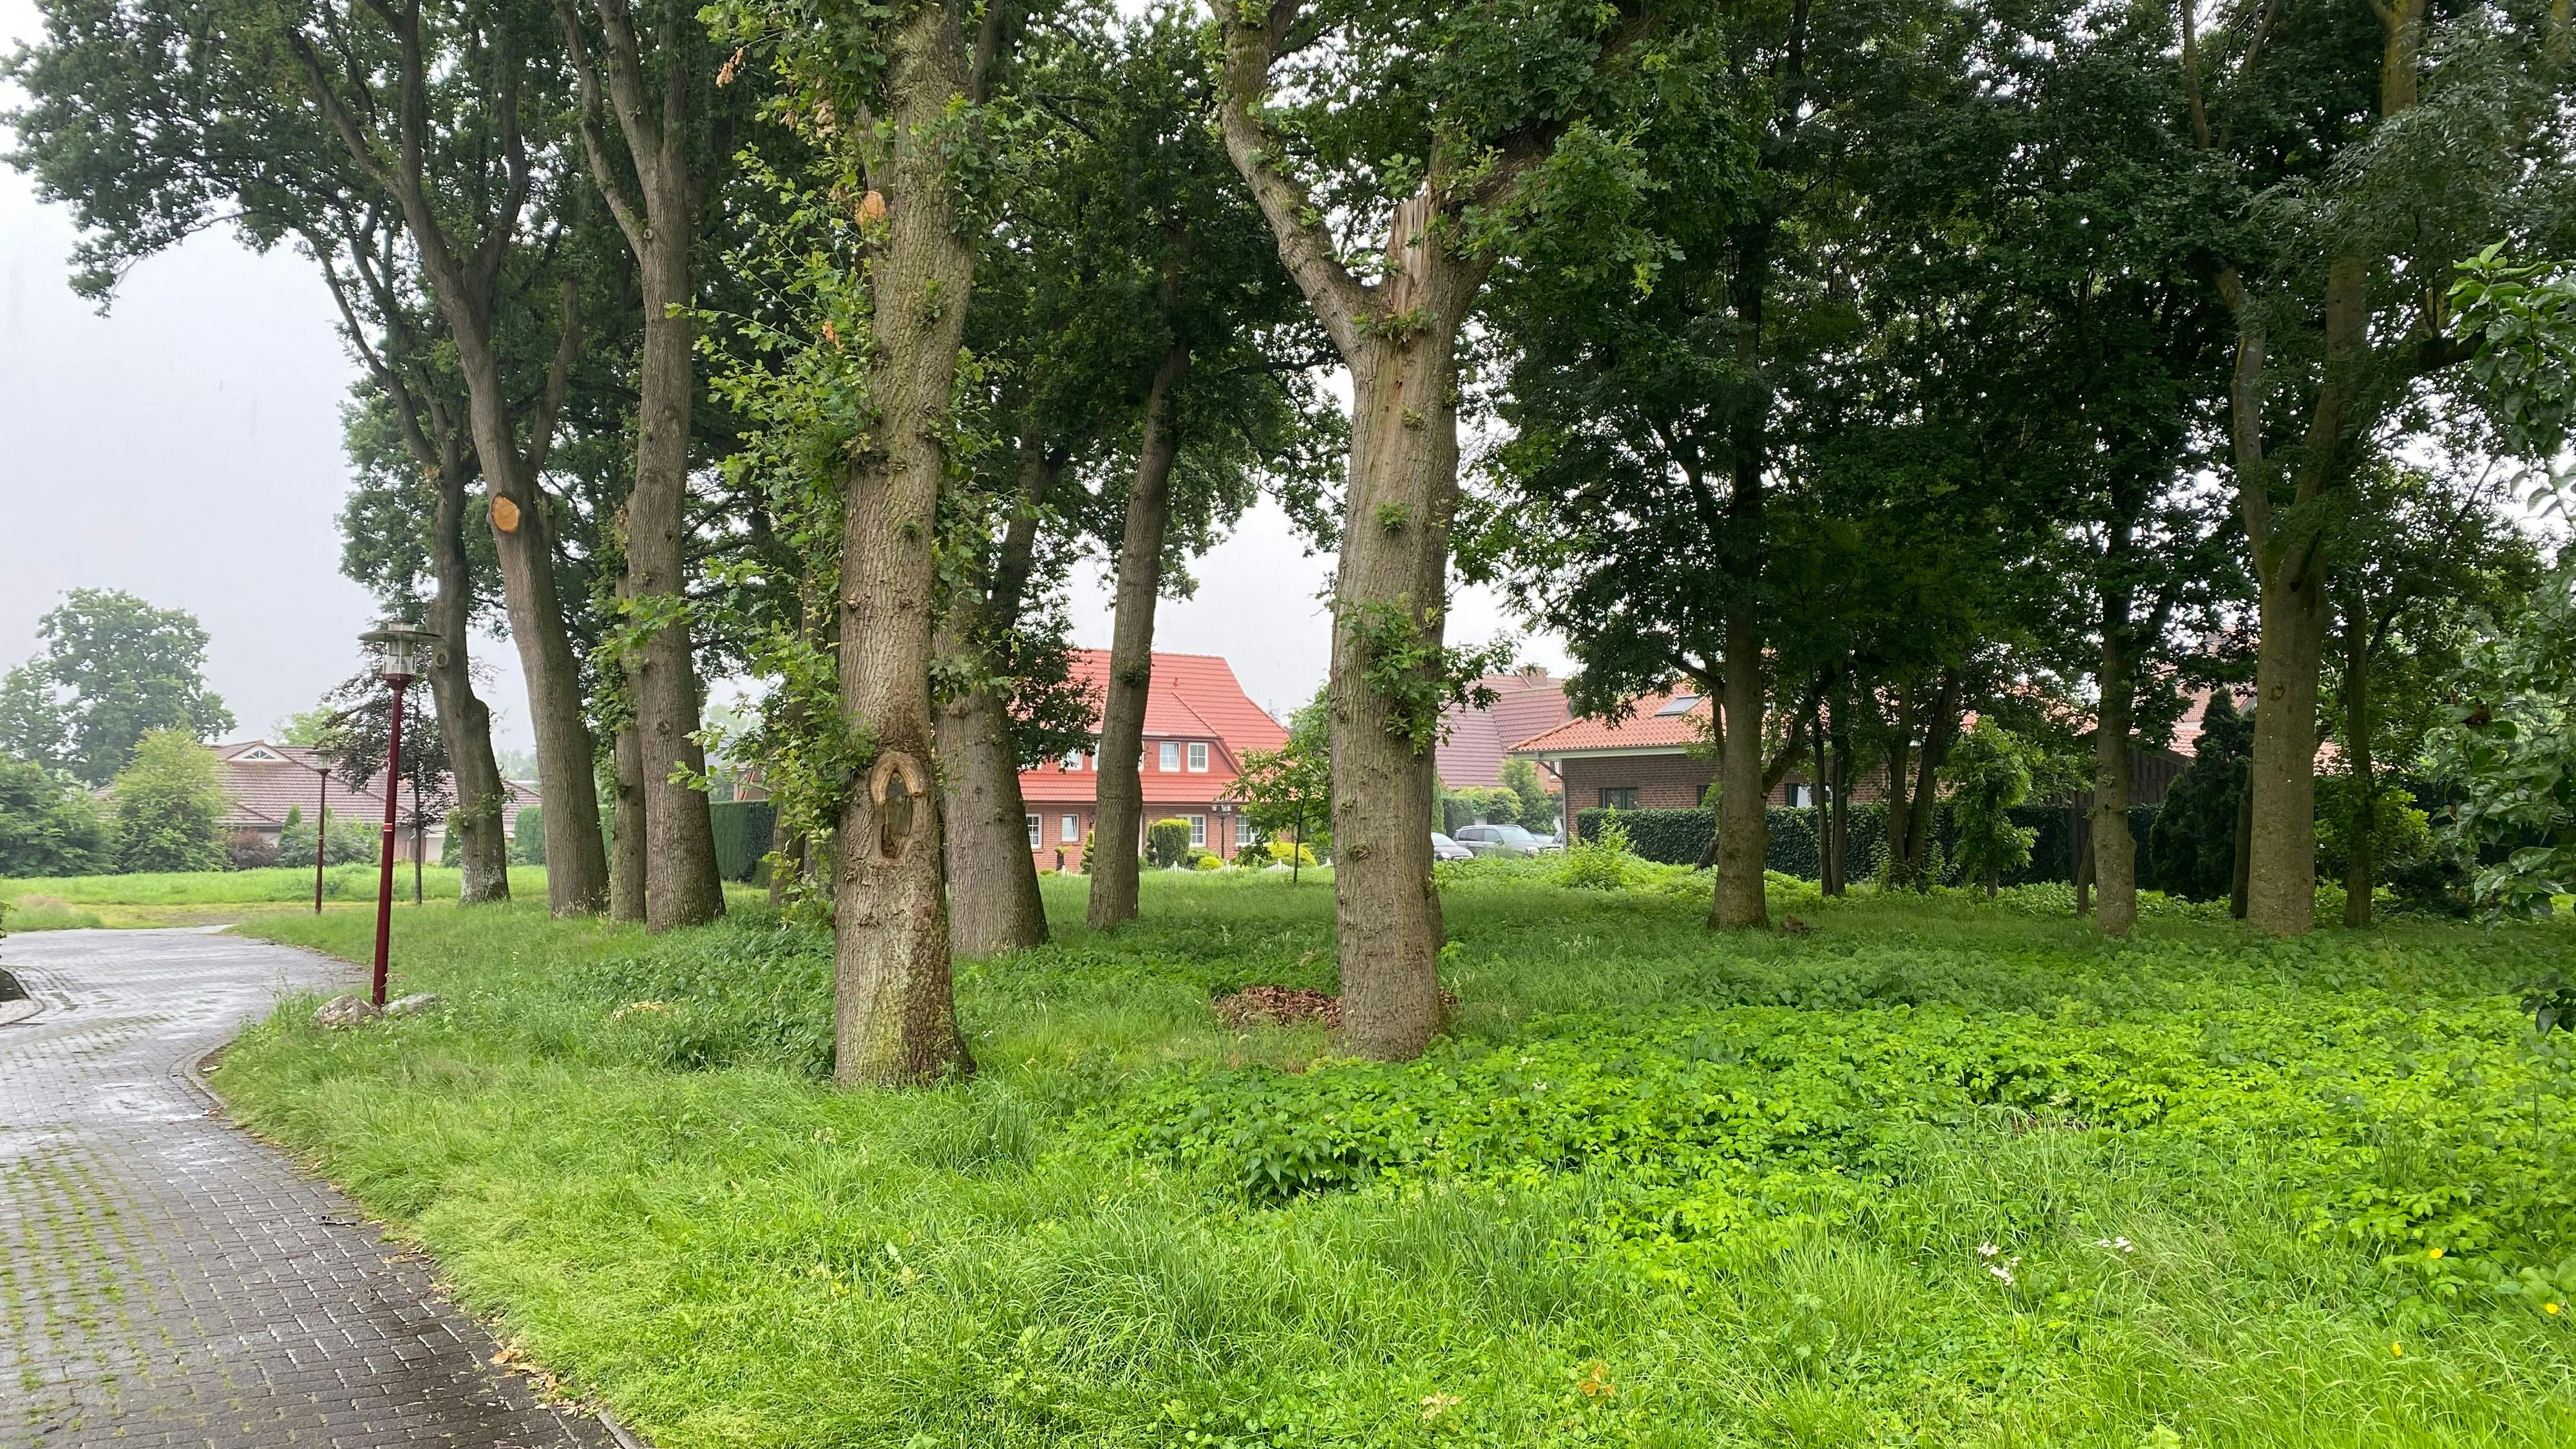 Natürliches Areal: Grünfläche und Baumbestand an der Pfarrer-Sommer-Straße in Bösel. Ein Teil des Areals soll nun für die Erweiterung einer Praxis verkauft werden. Foto: Wimberg